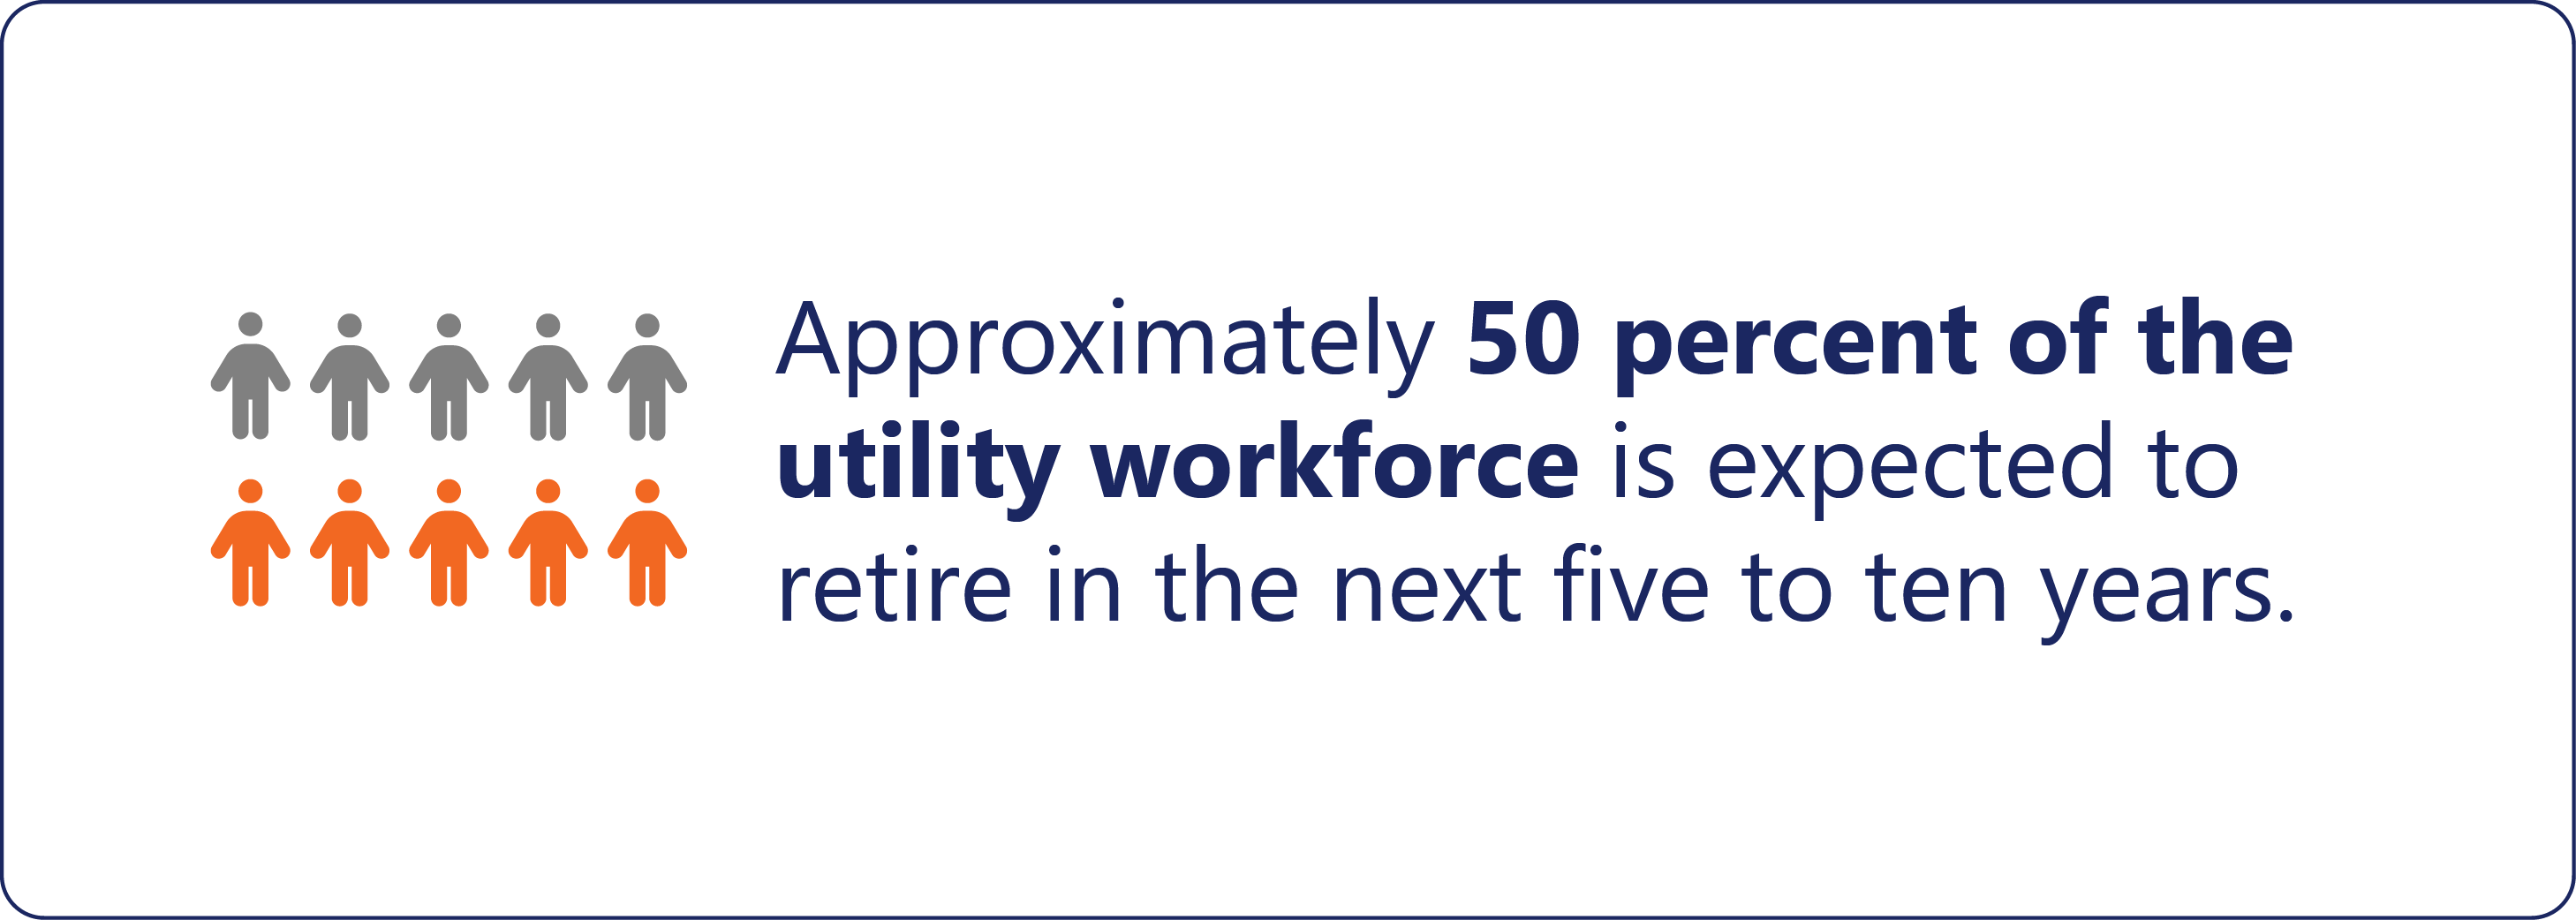 Utility workforce statistic